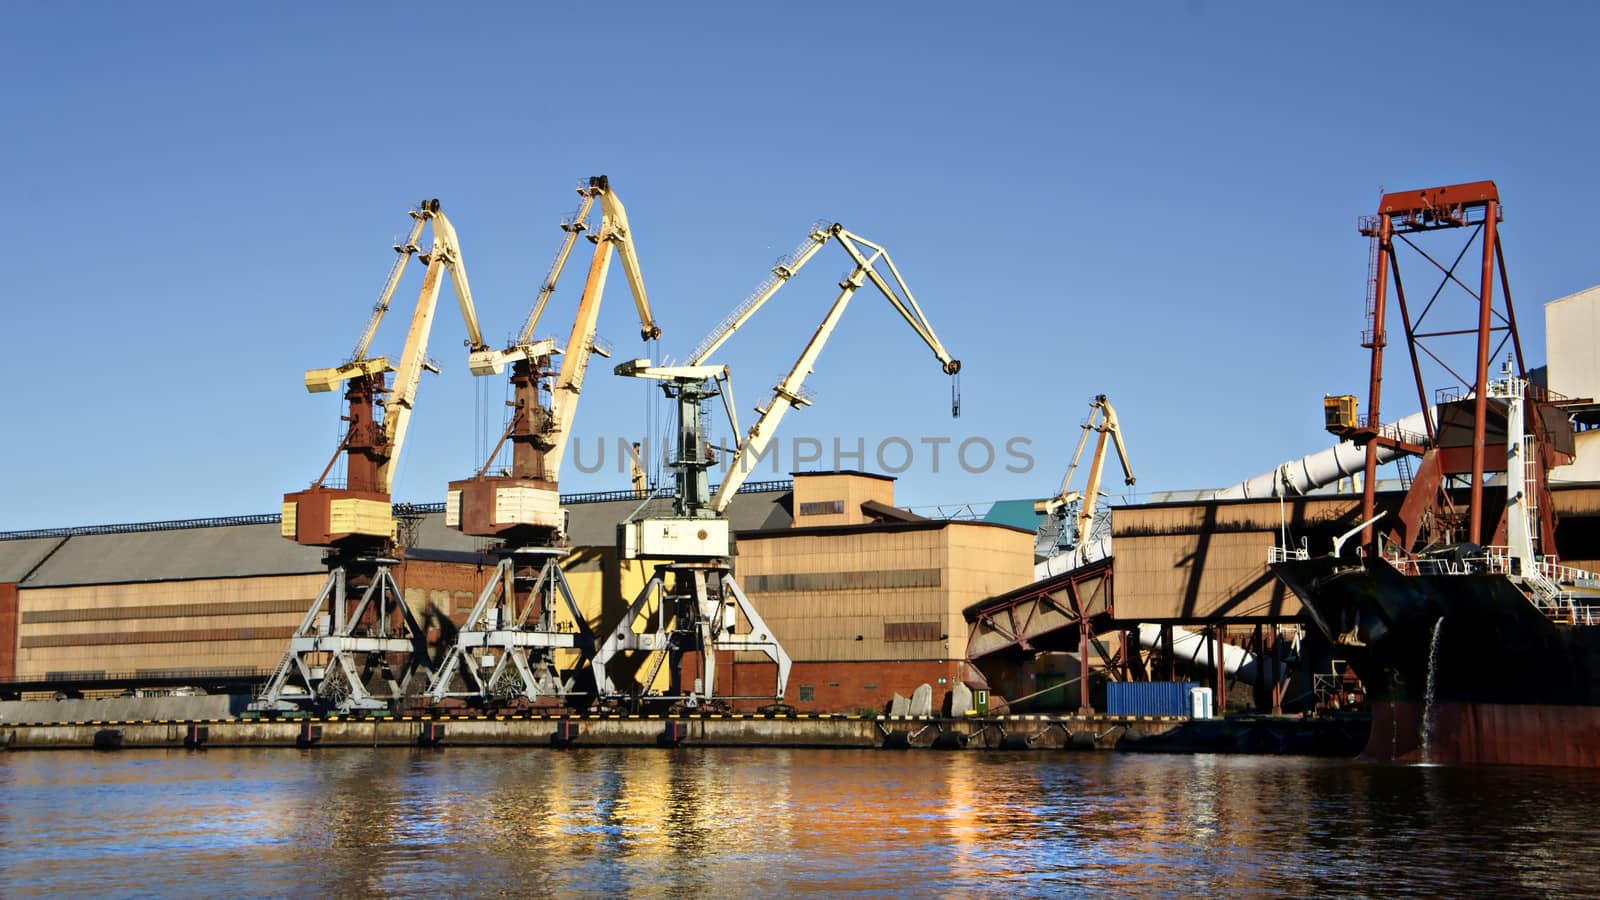 Harbor cranes by ires007